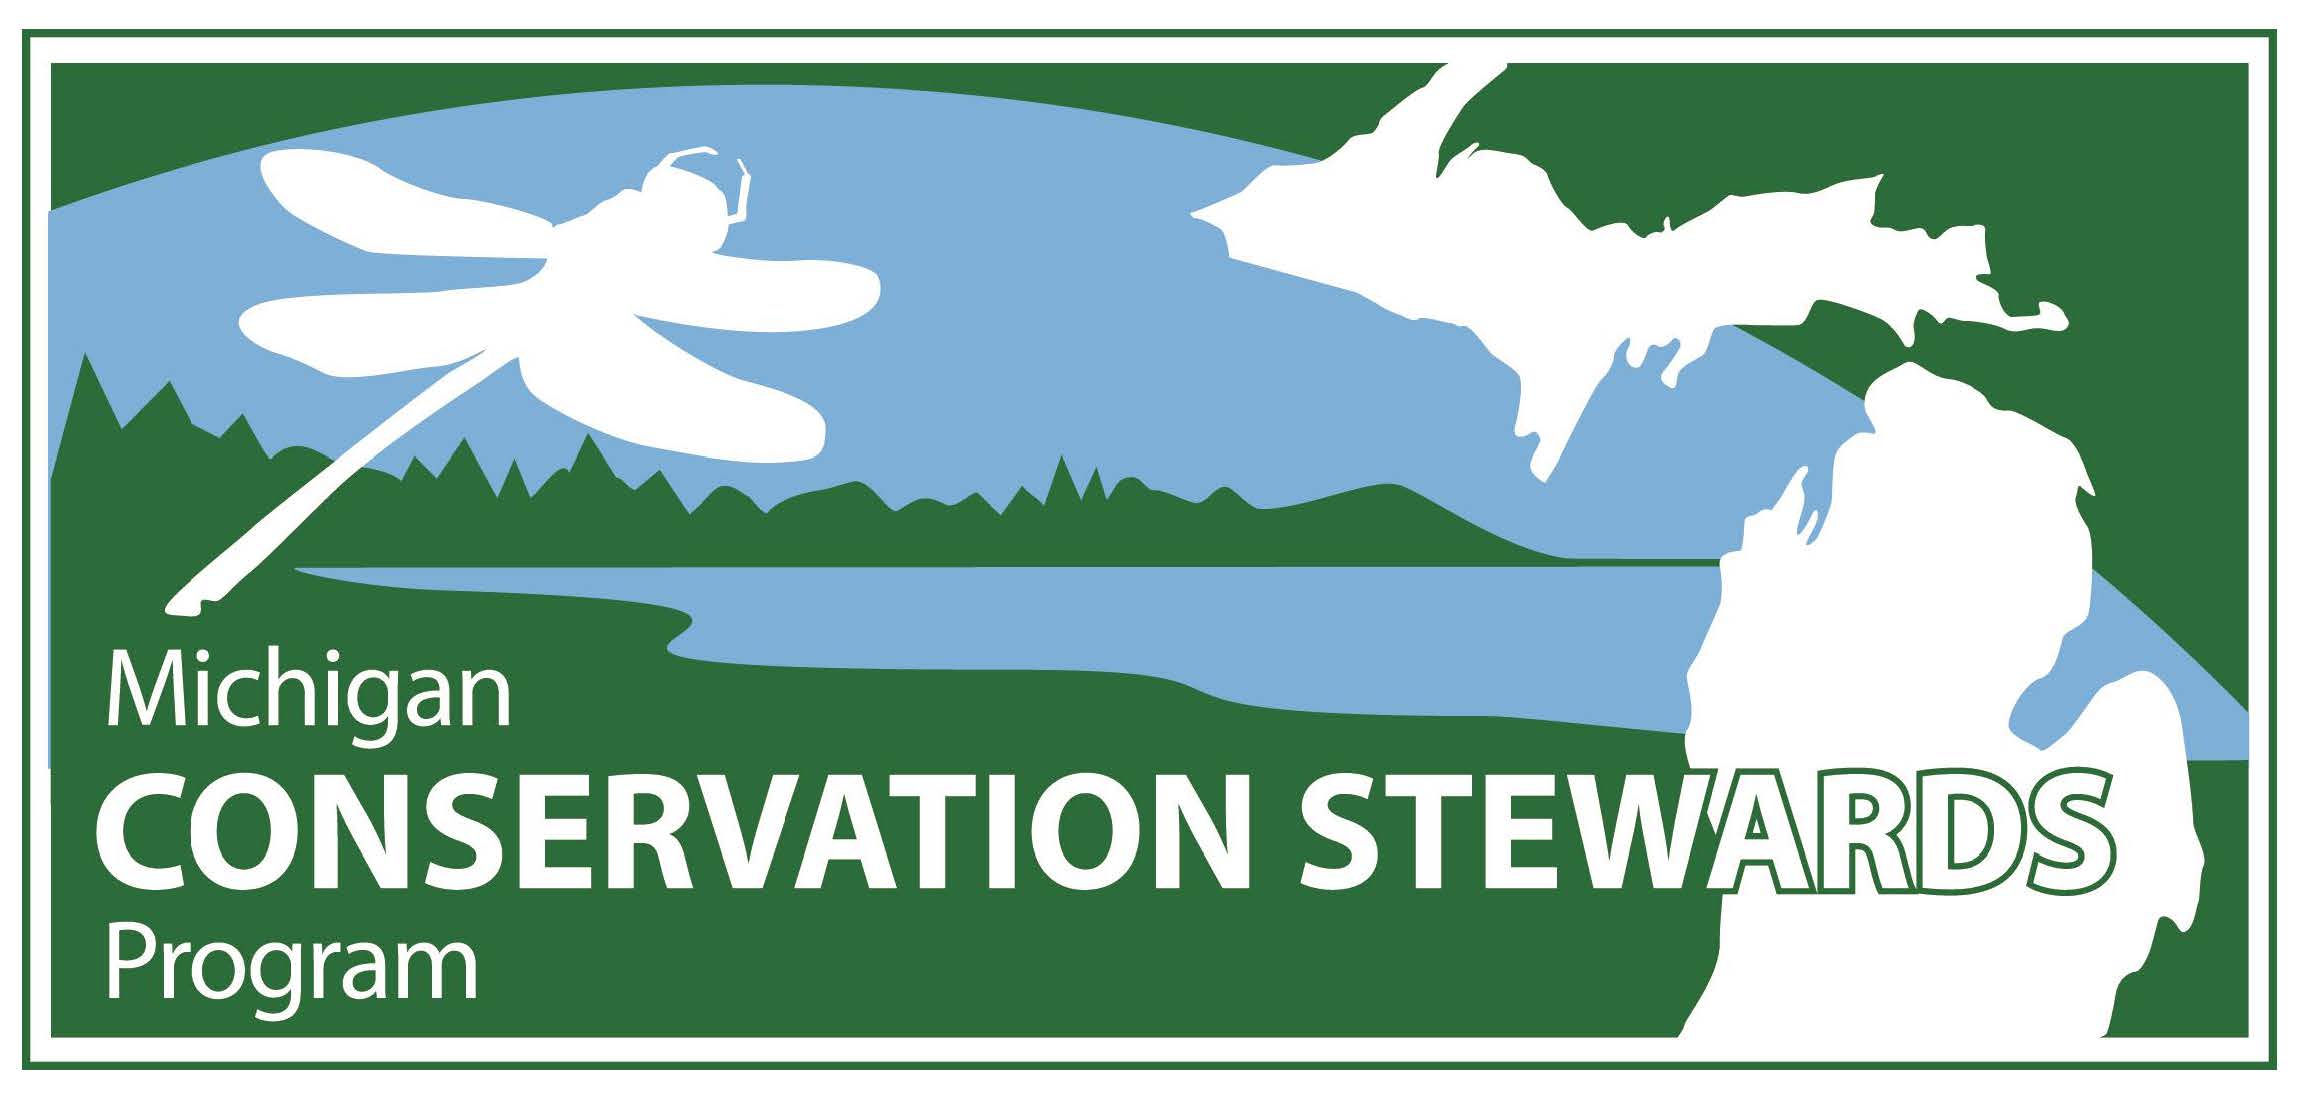 Conservation Stewards Program marketing graphic